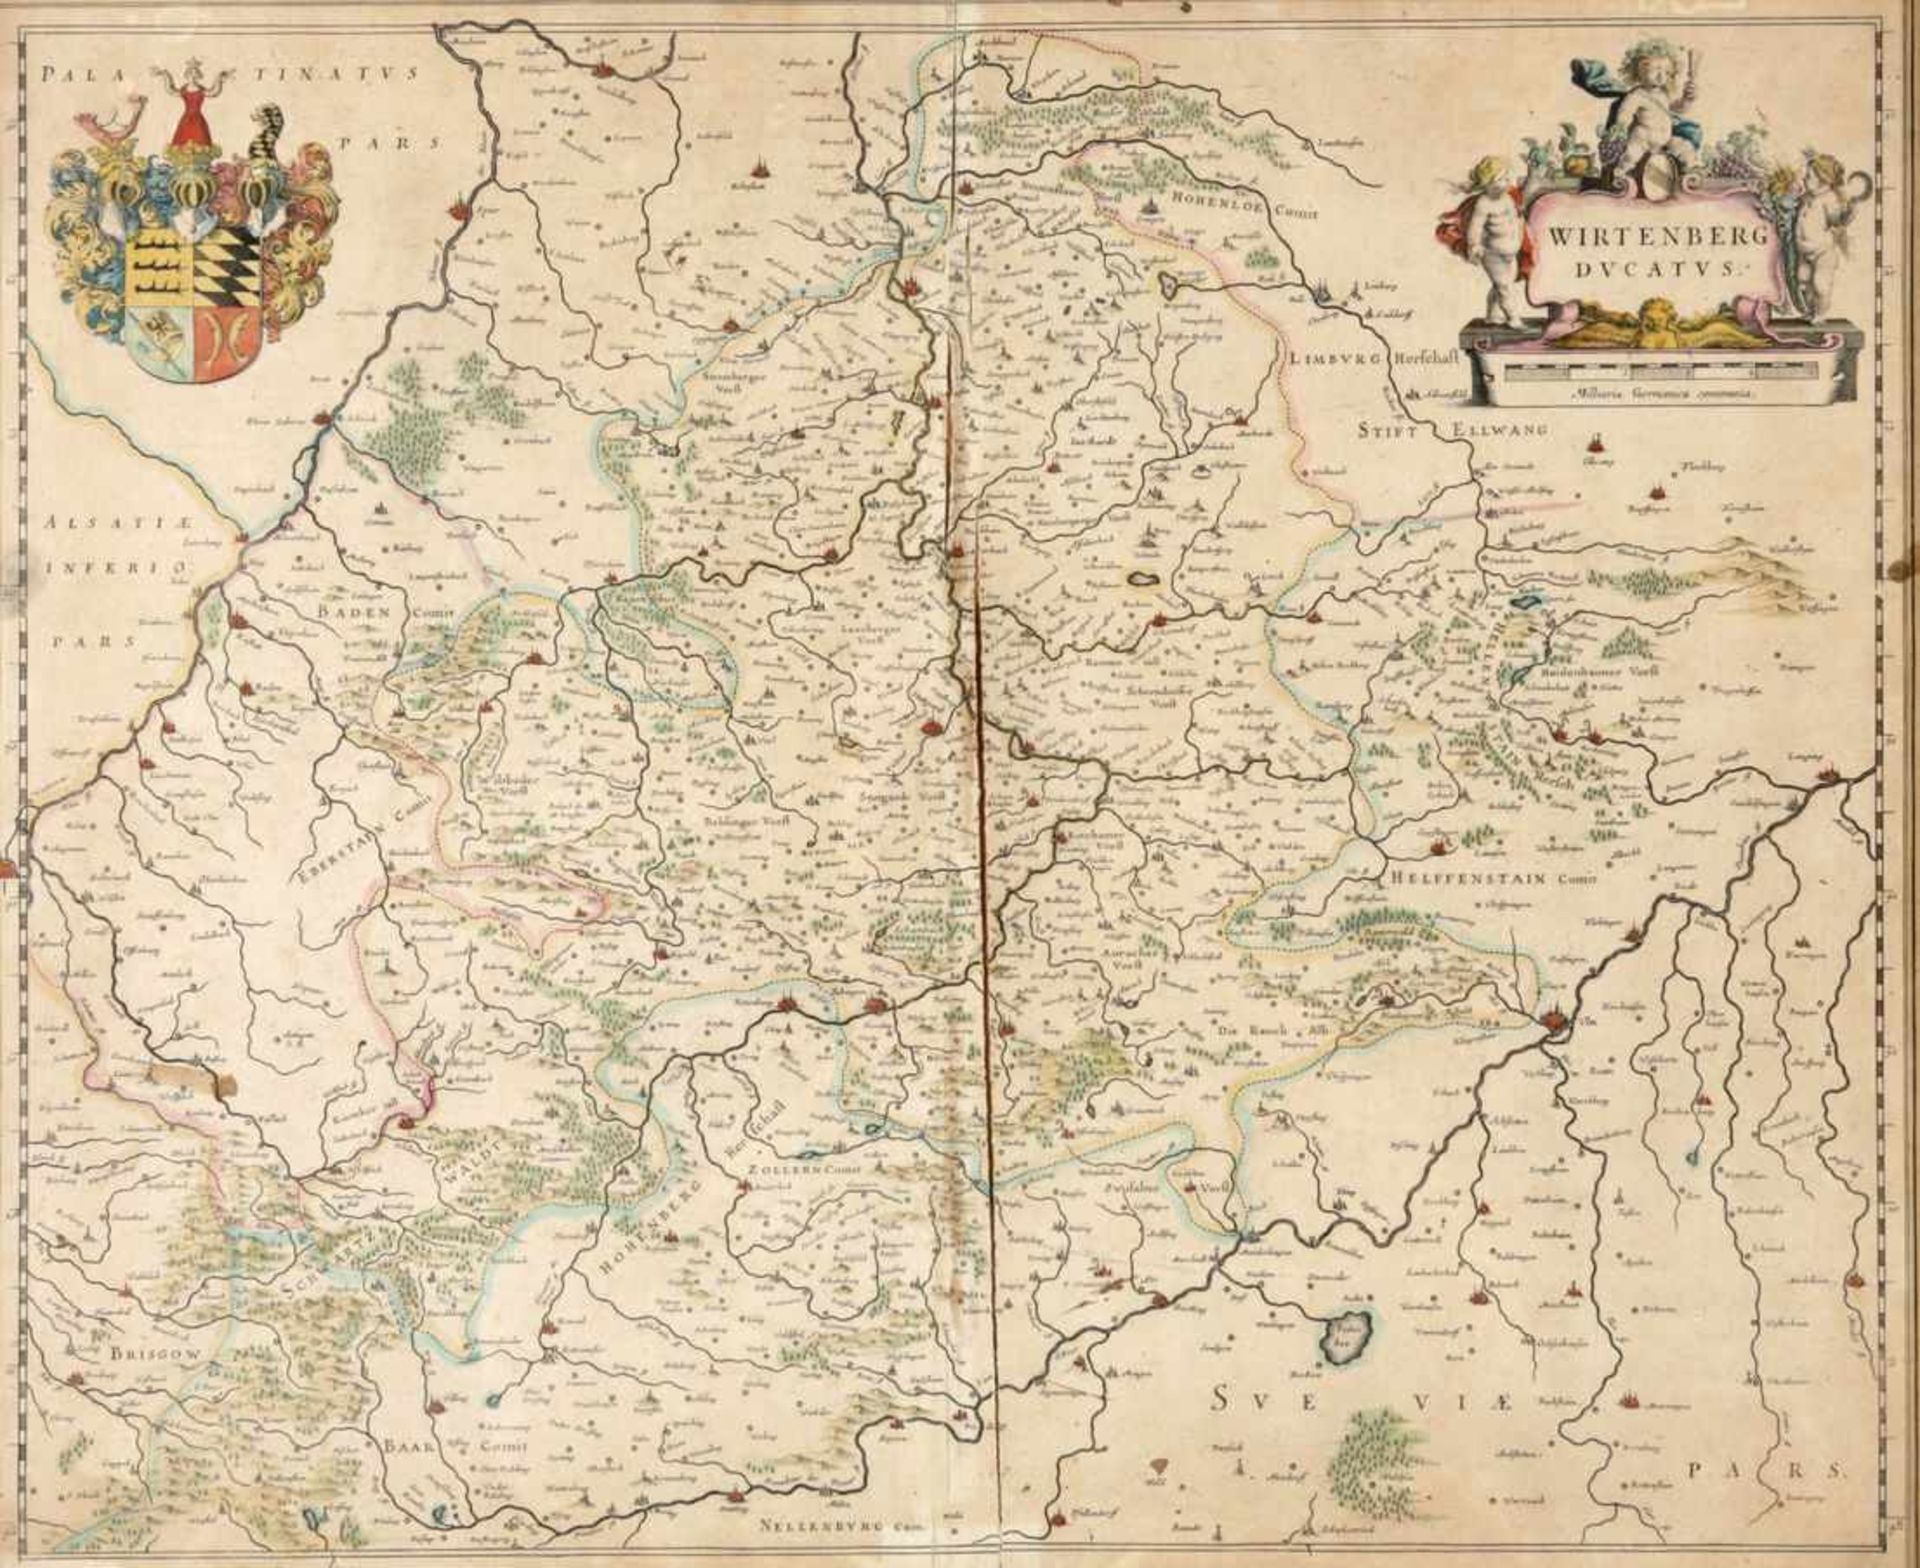 Württemberg - Karte19.Jh. Wirtenberg Ducatus.- Kol. Kupferstich v. Blaeu mit Wappen- und figürl.